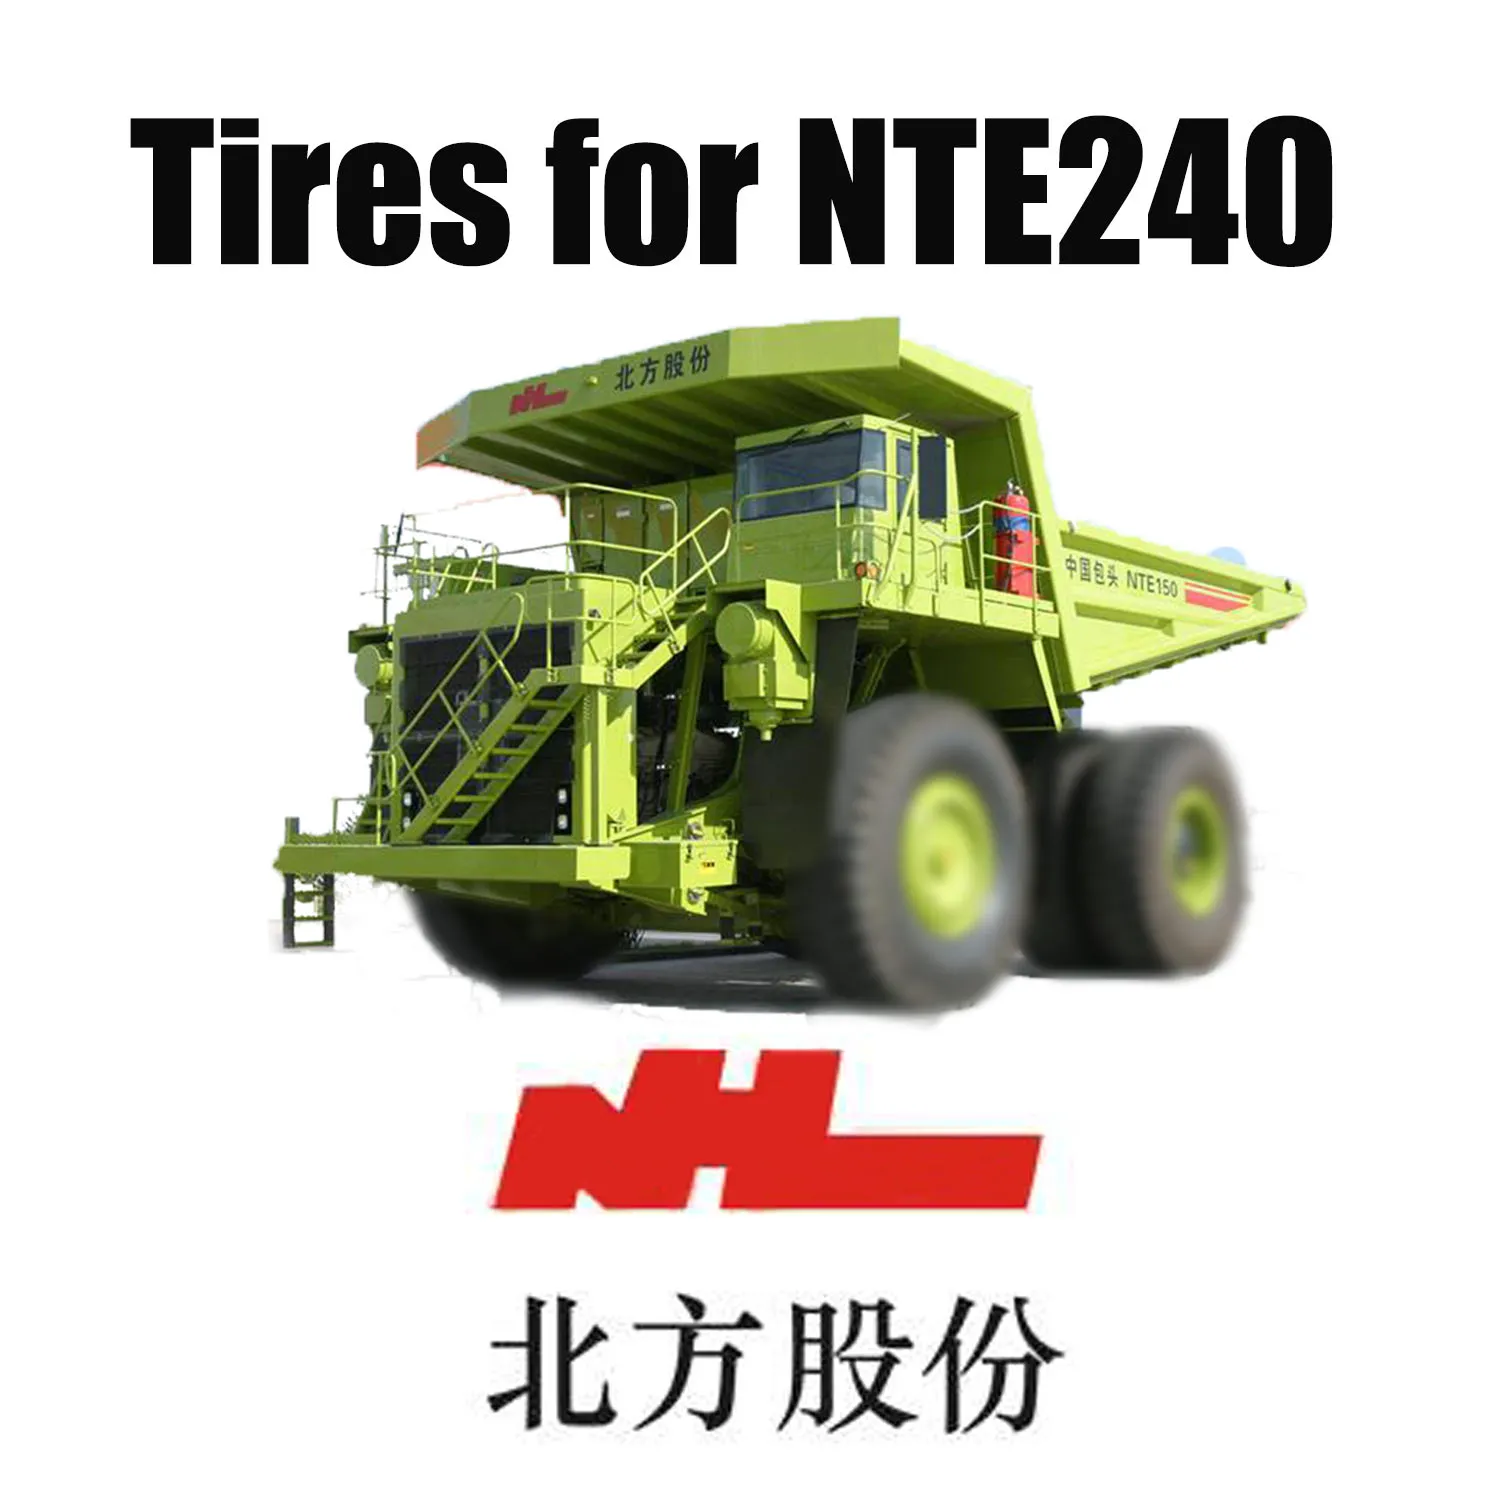 Thiết bị vận chuyển hạng nặng NTE 240 được trang bị Lốp OTR địa hình 46 / 90R57